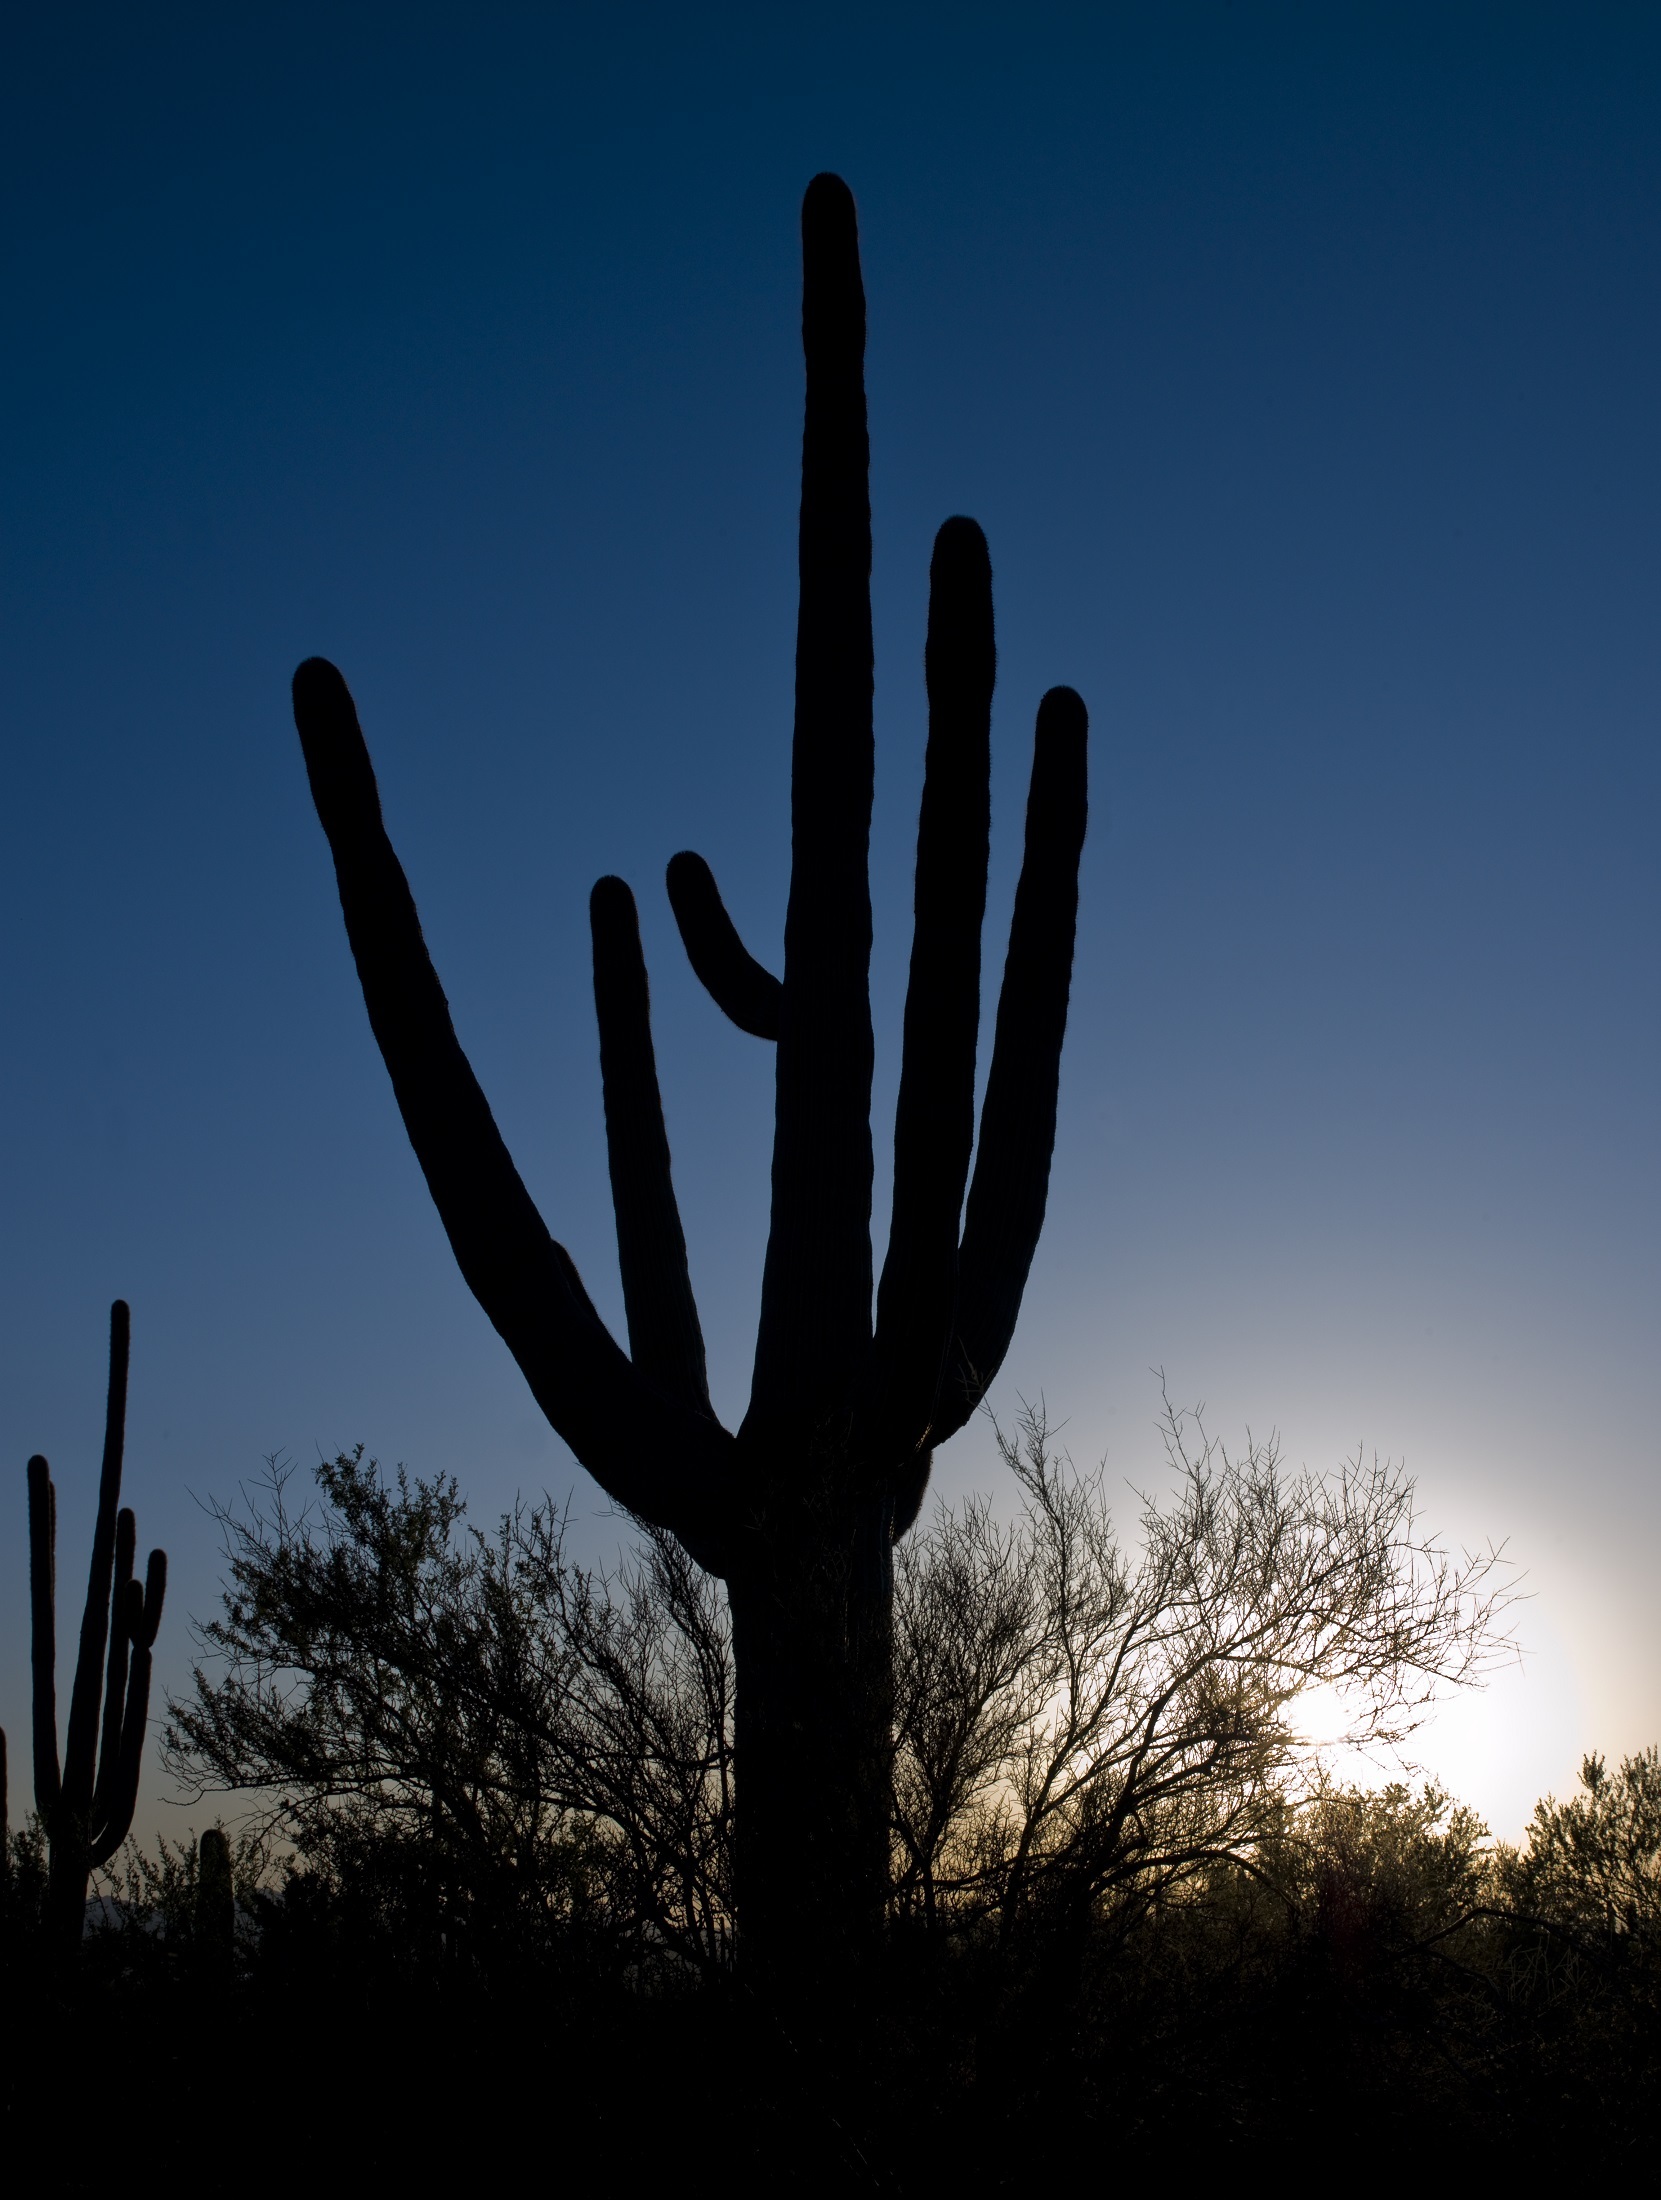 Cactus in the desert photo